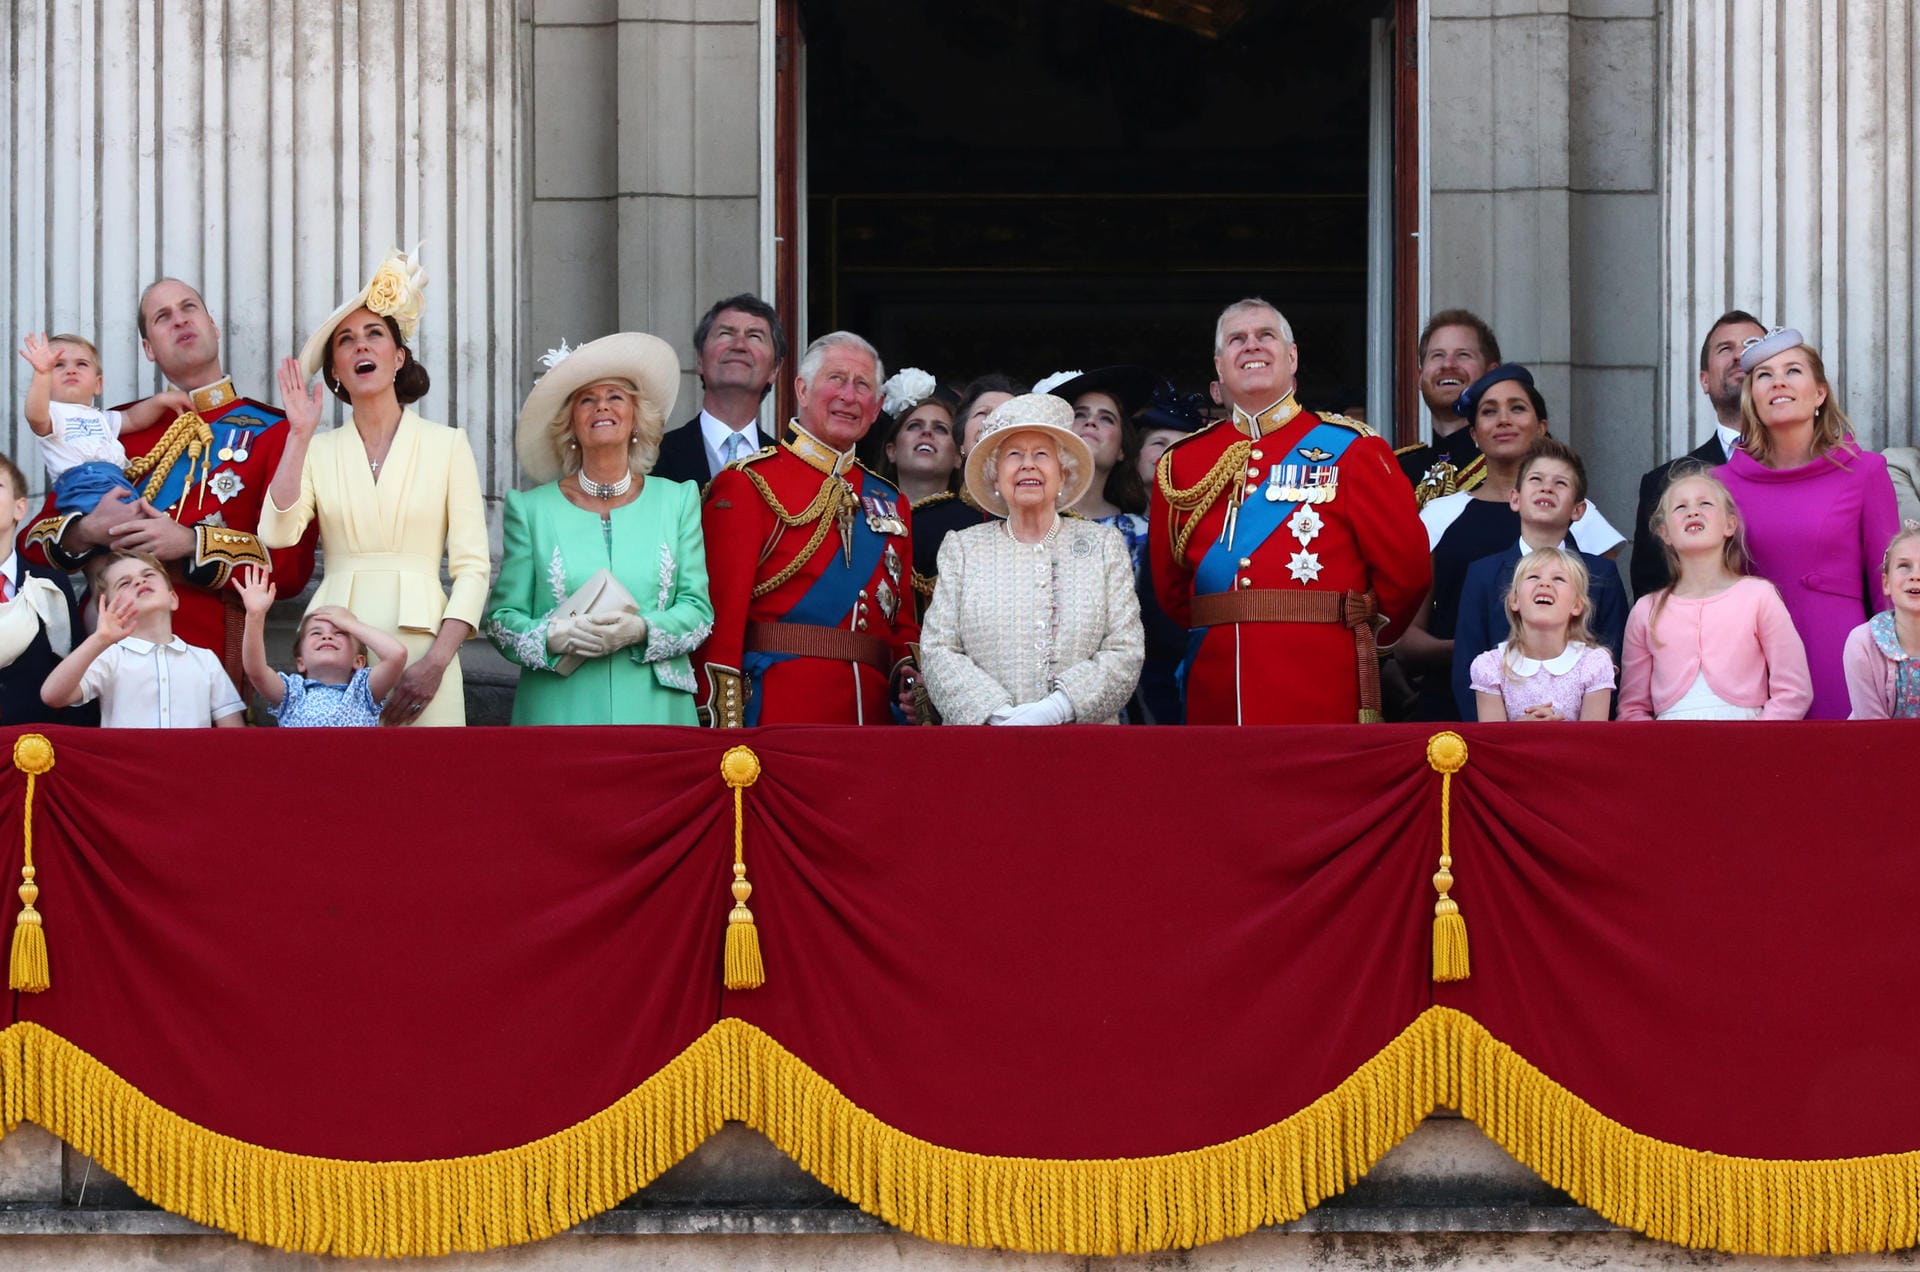 Die gesamte royale Familie hat sich auf dem Balkon versammelt. Alle Augen waren dabei auf den kleinen Prinz Louis gerichtet, der seinen ersten Auftritt auf dem Balkon des Buckingham Palastes hatte.